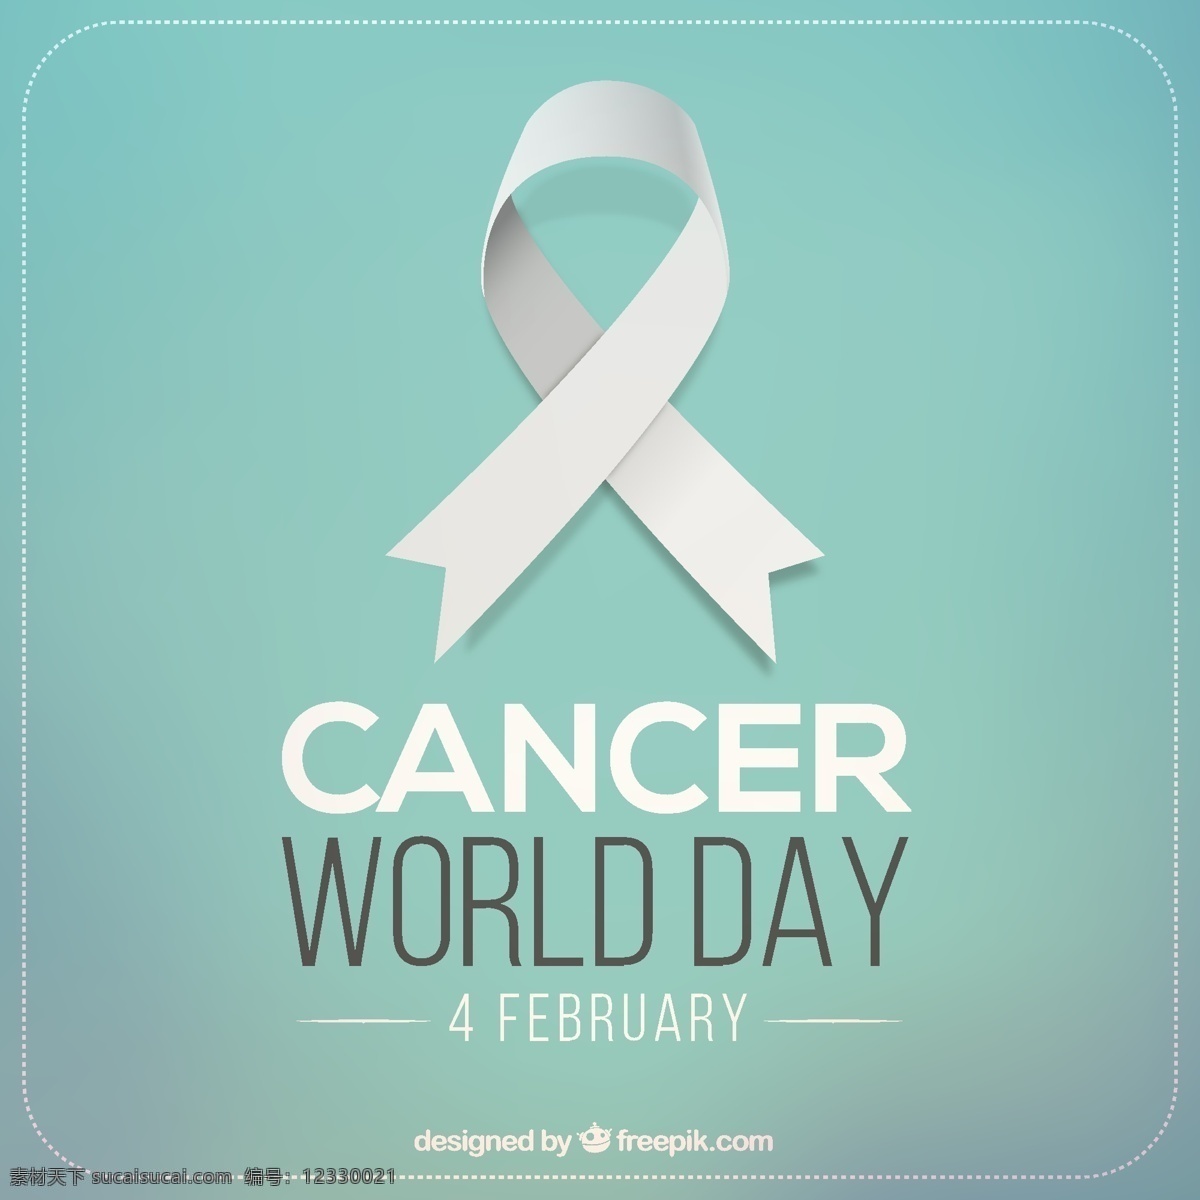 世界 癌症 日 背景 带状 医学 蓝色 粉红色 弓 标志 支持 象征 医疗 斗争 慈善 组织 希望 一天 运动 粉红丝带 积极 青色 天蓝色